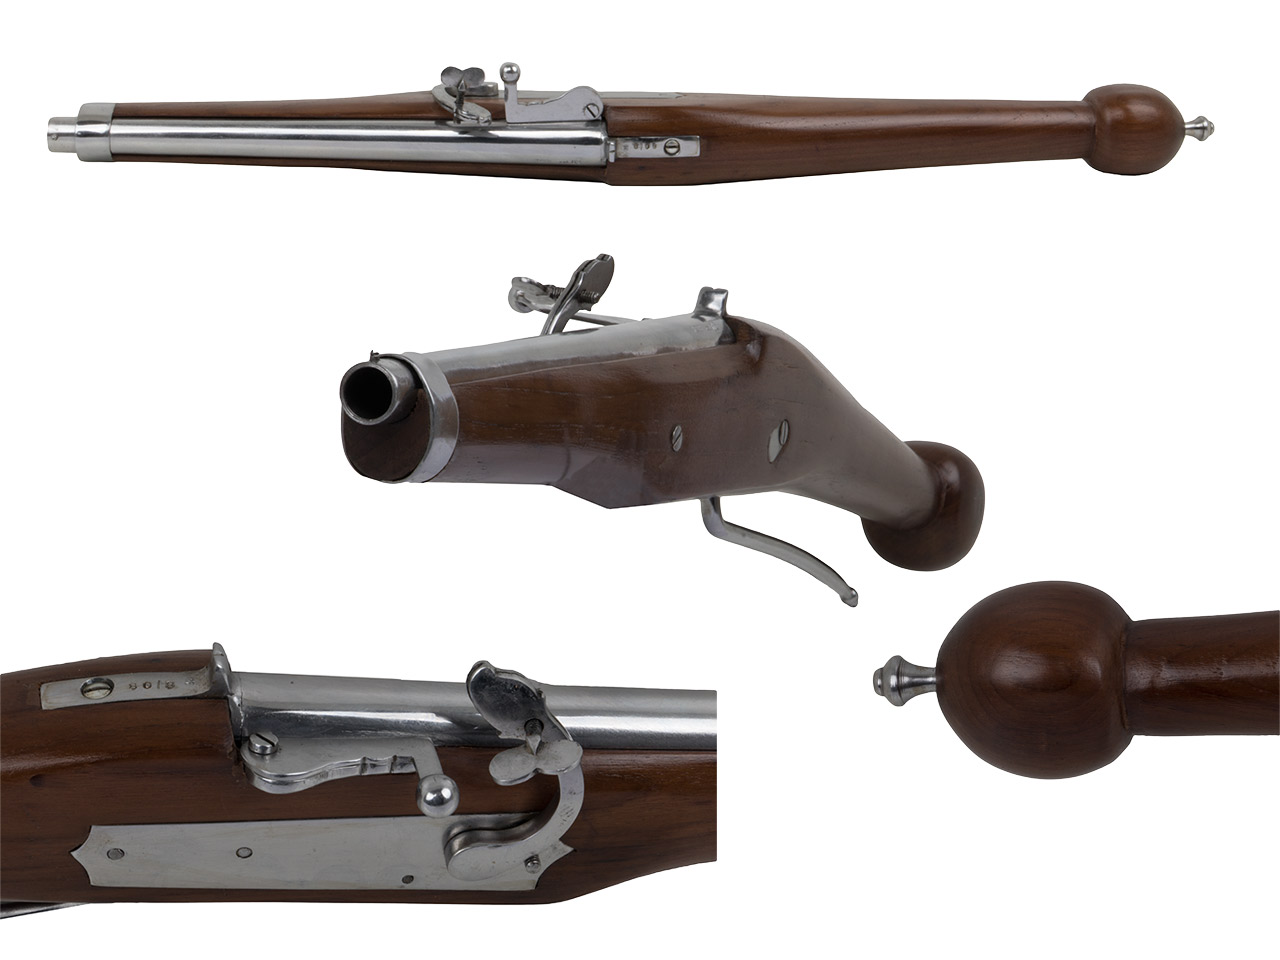 Vorderlader Luntenschlosspistole Matchlook Pistole Kaliber .63 bzw. 16 mm (P18)